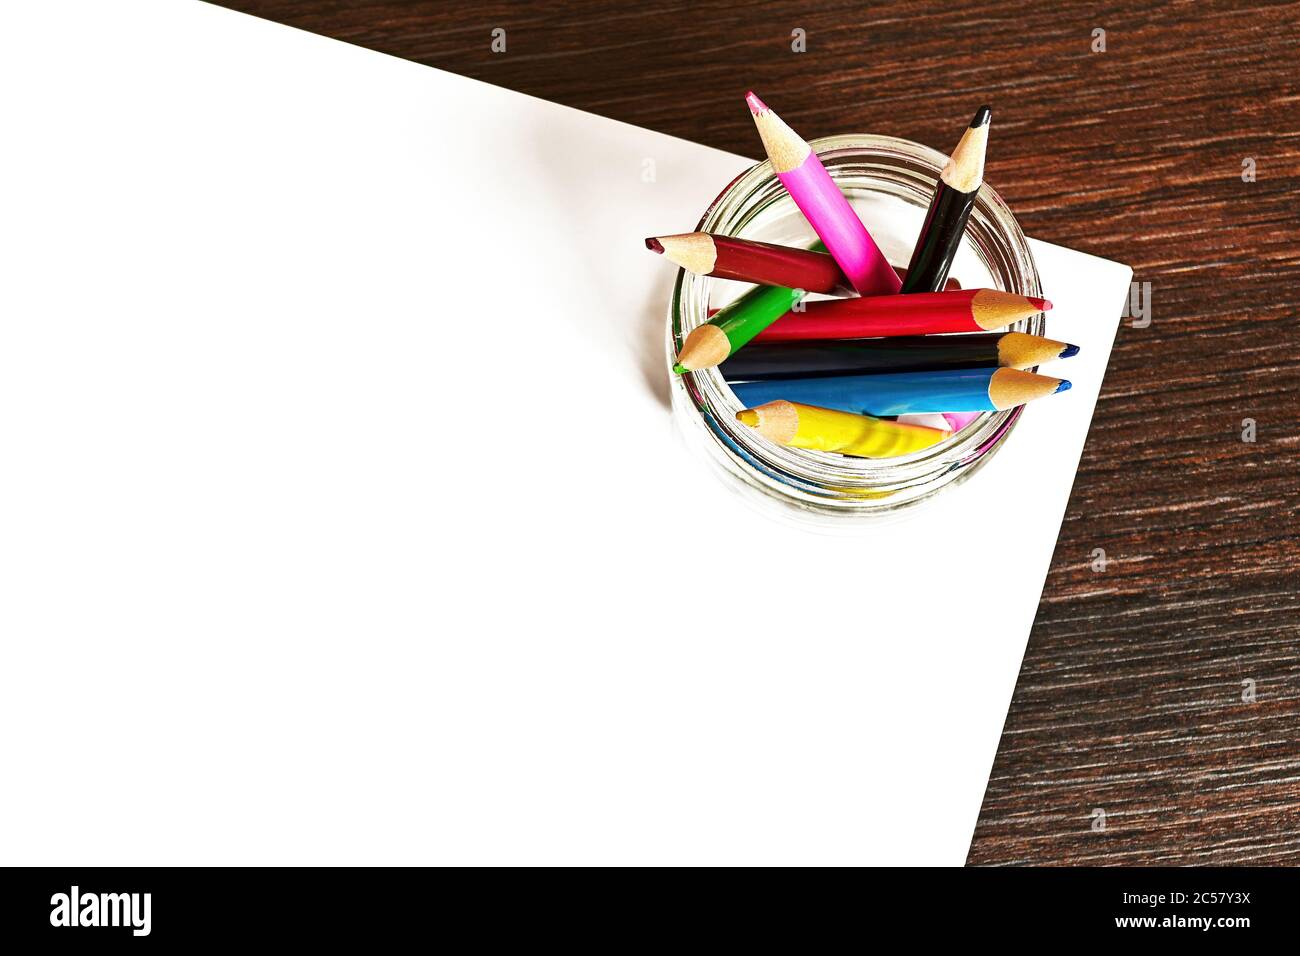 Vue de dessus du bureau pour enfants avec crayons de couleur et feuilles de papier blanc pour le dessin. Modèle d'arrière-plan avec espace de copie pour le texte de publicité Banque D'Images